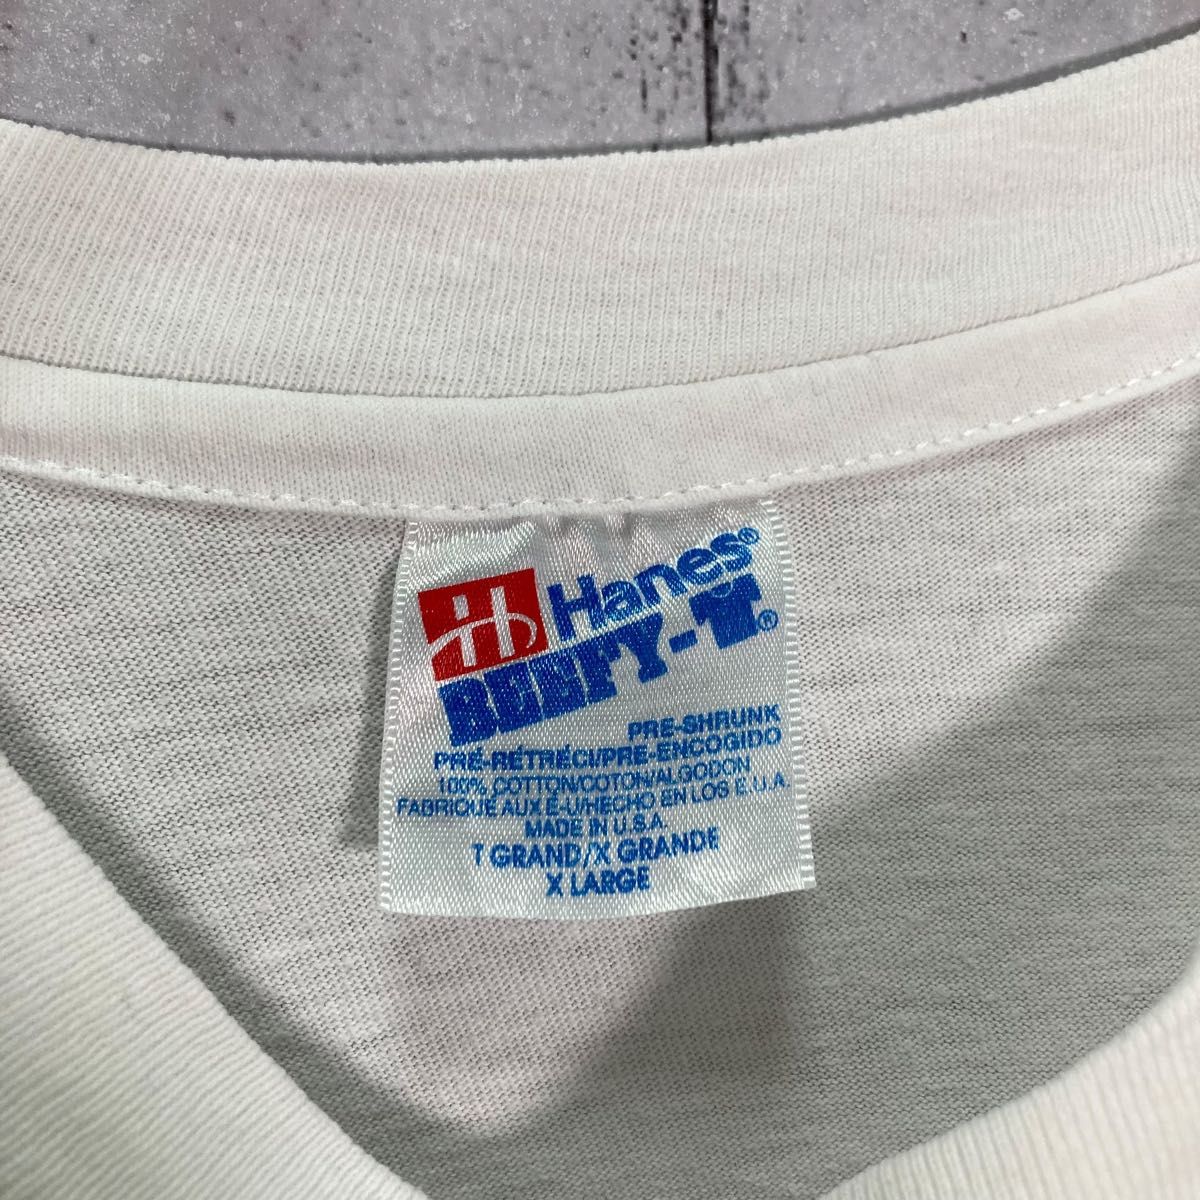 【レアデザイン】90s VINTAGE 両面プリント 半袖Tシャツ USA製